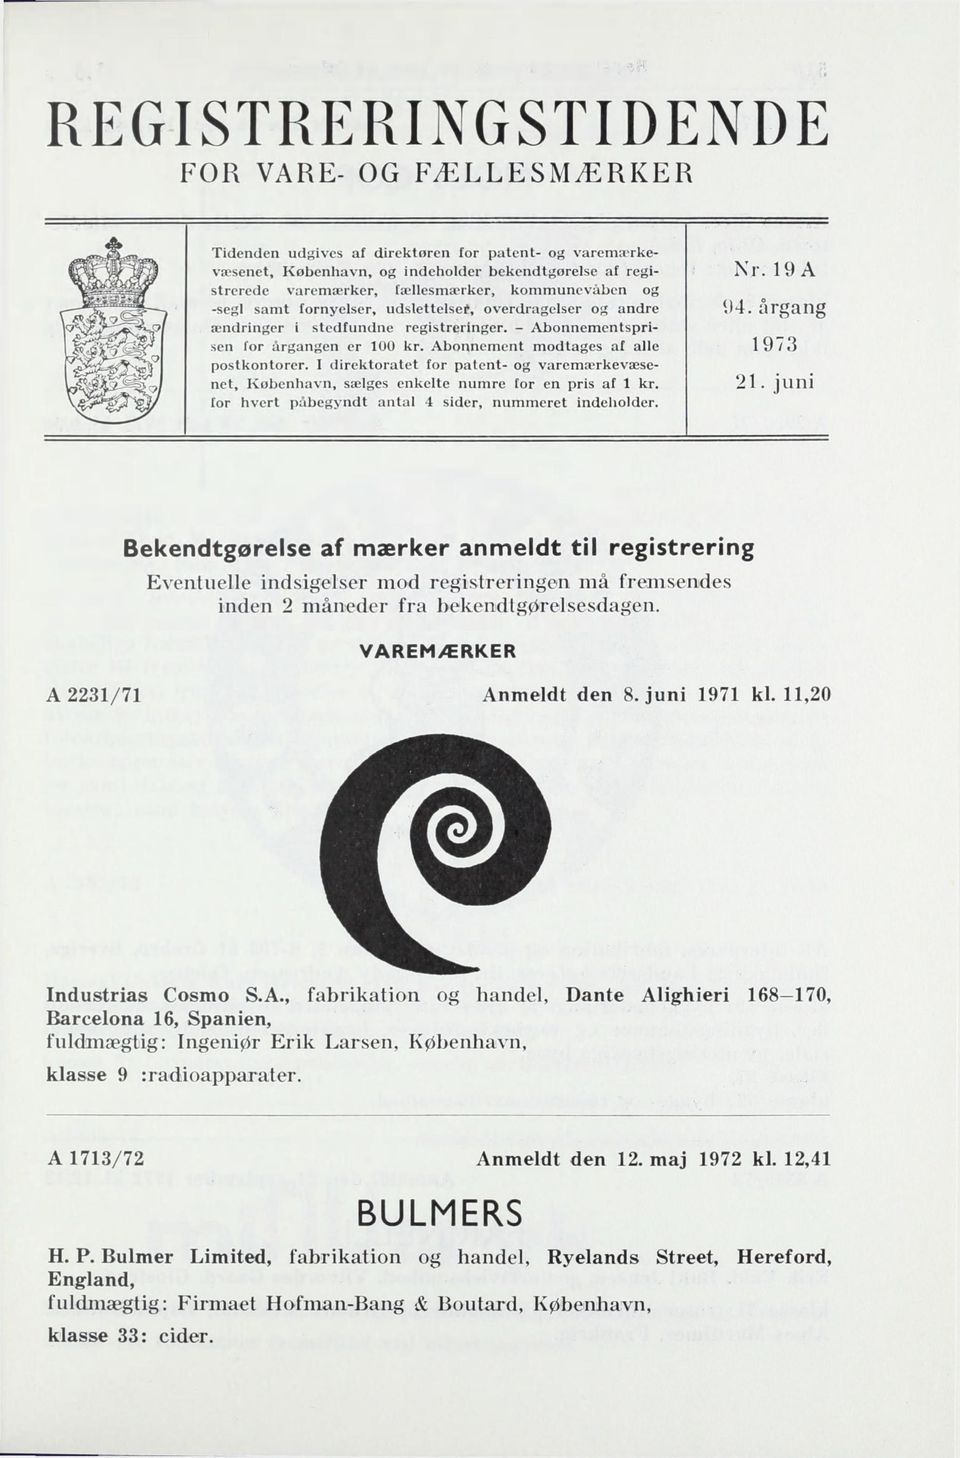 Abonnement modtages af alle 1973 postkontorer. I direktoratet for patent- og varemærkevæsenet, København, sælges enkelte numre for en pris af 1 kr.